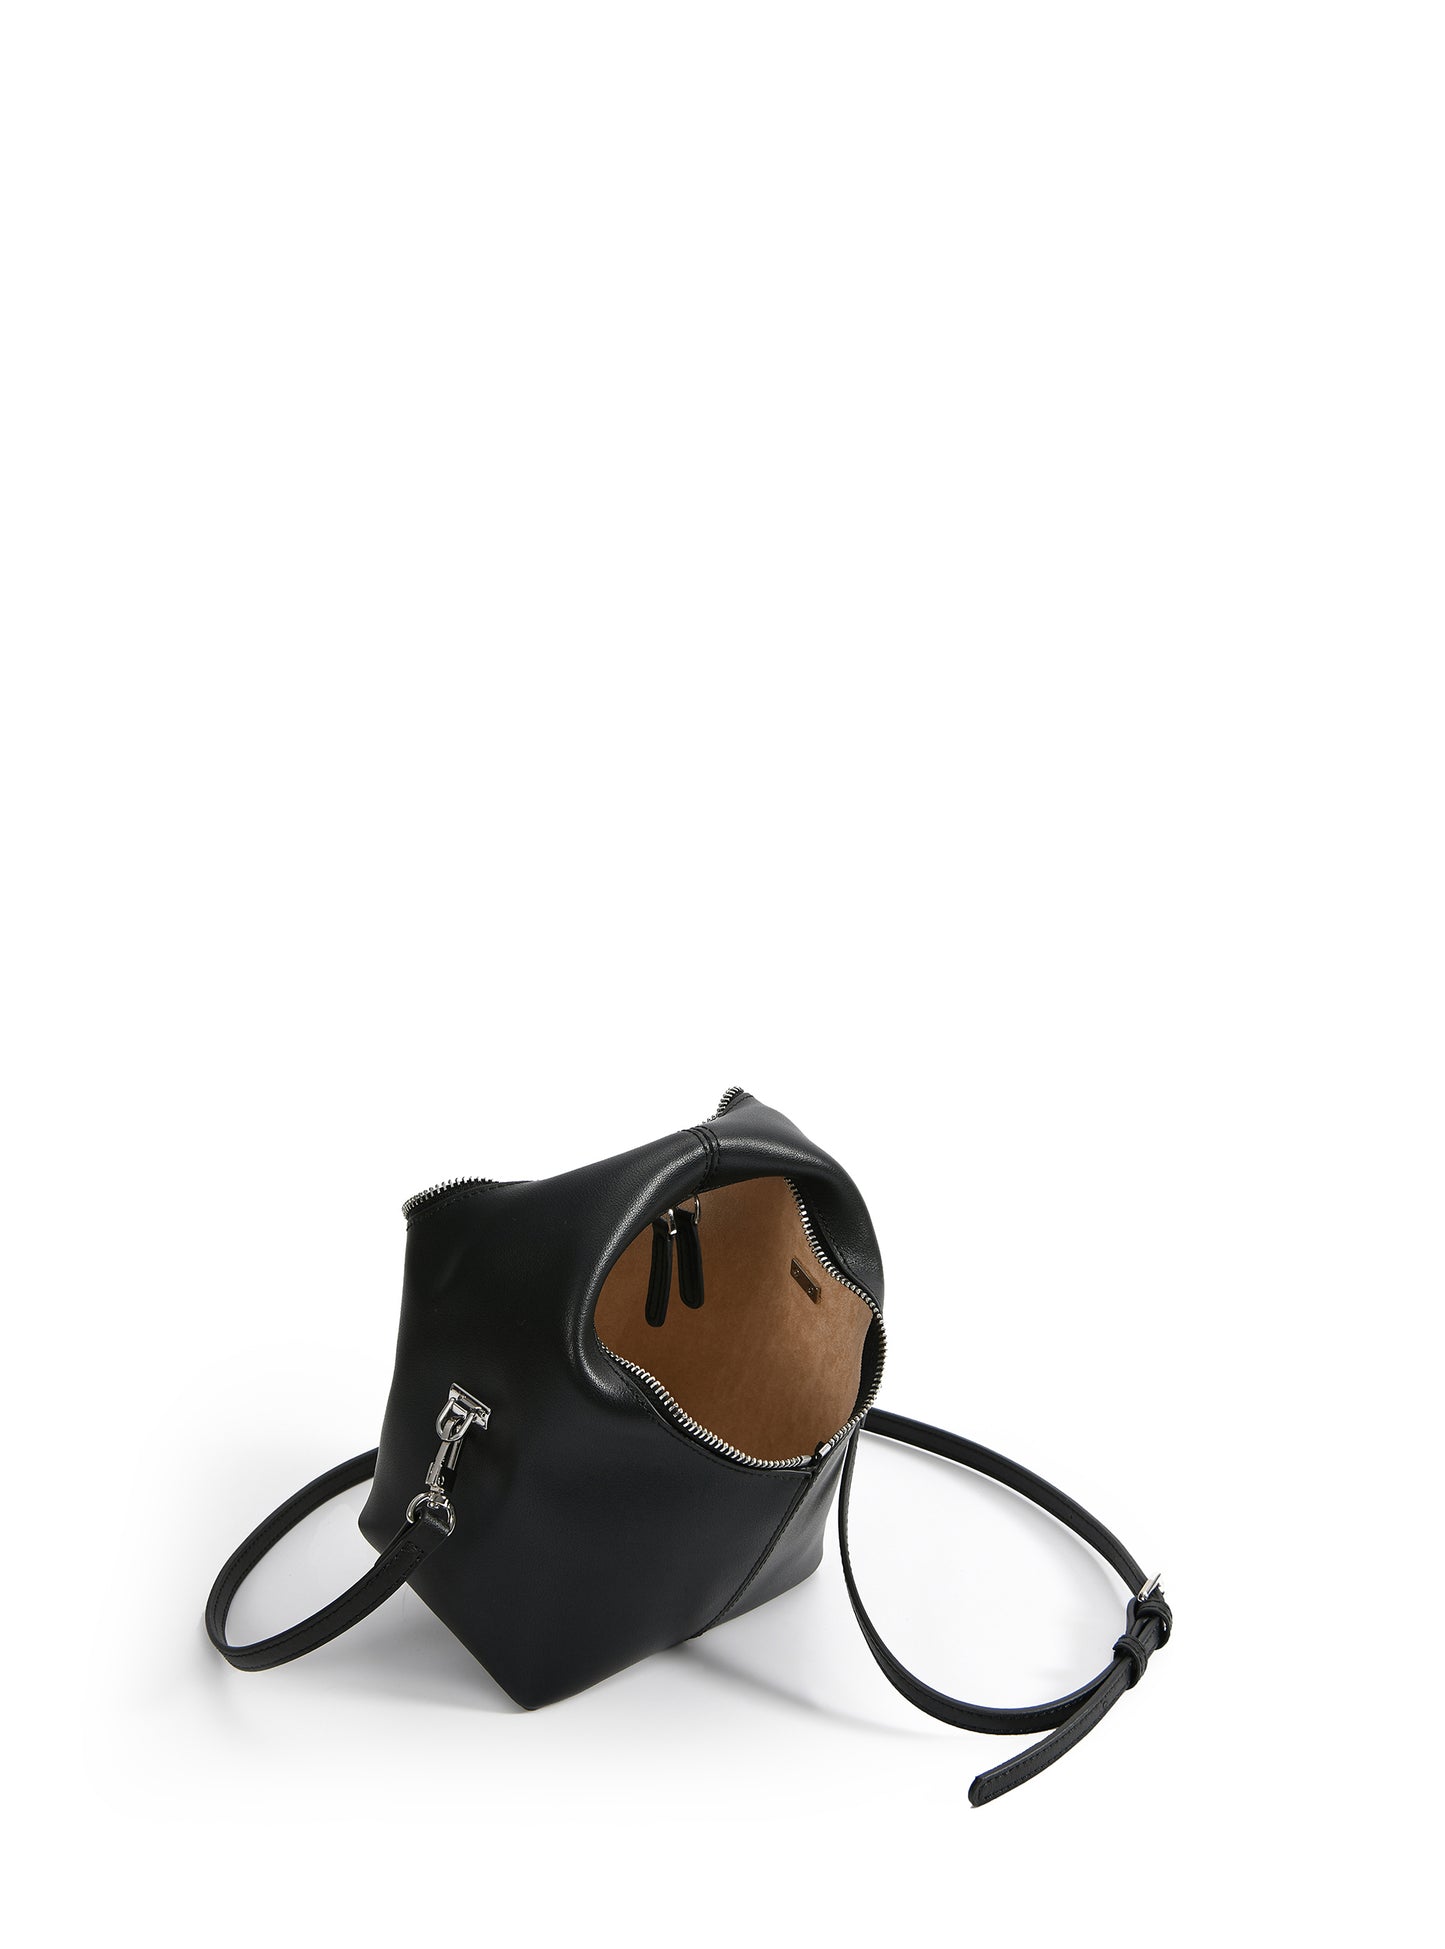 Rebecca Small Cutie Leather Bag, Black